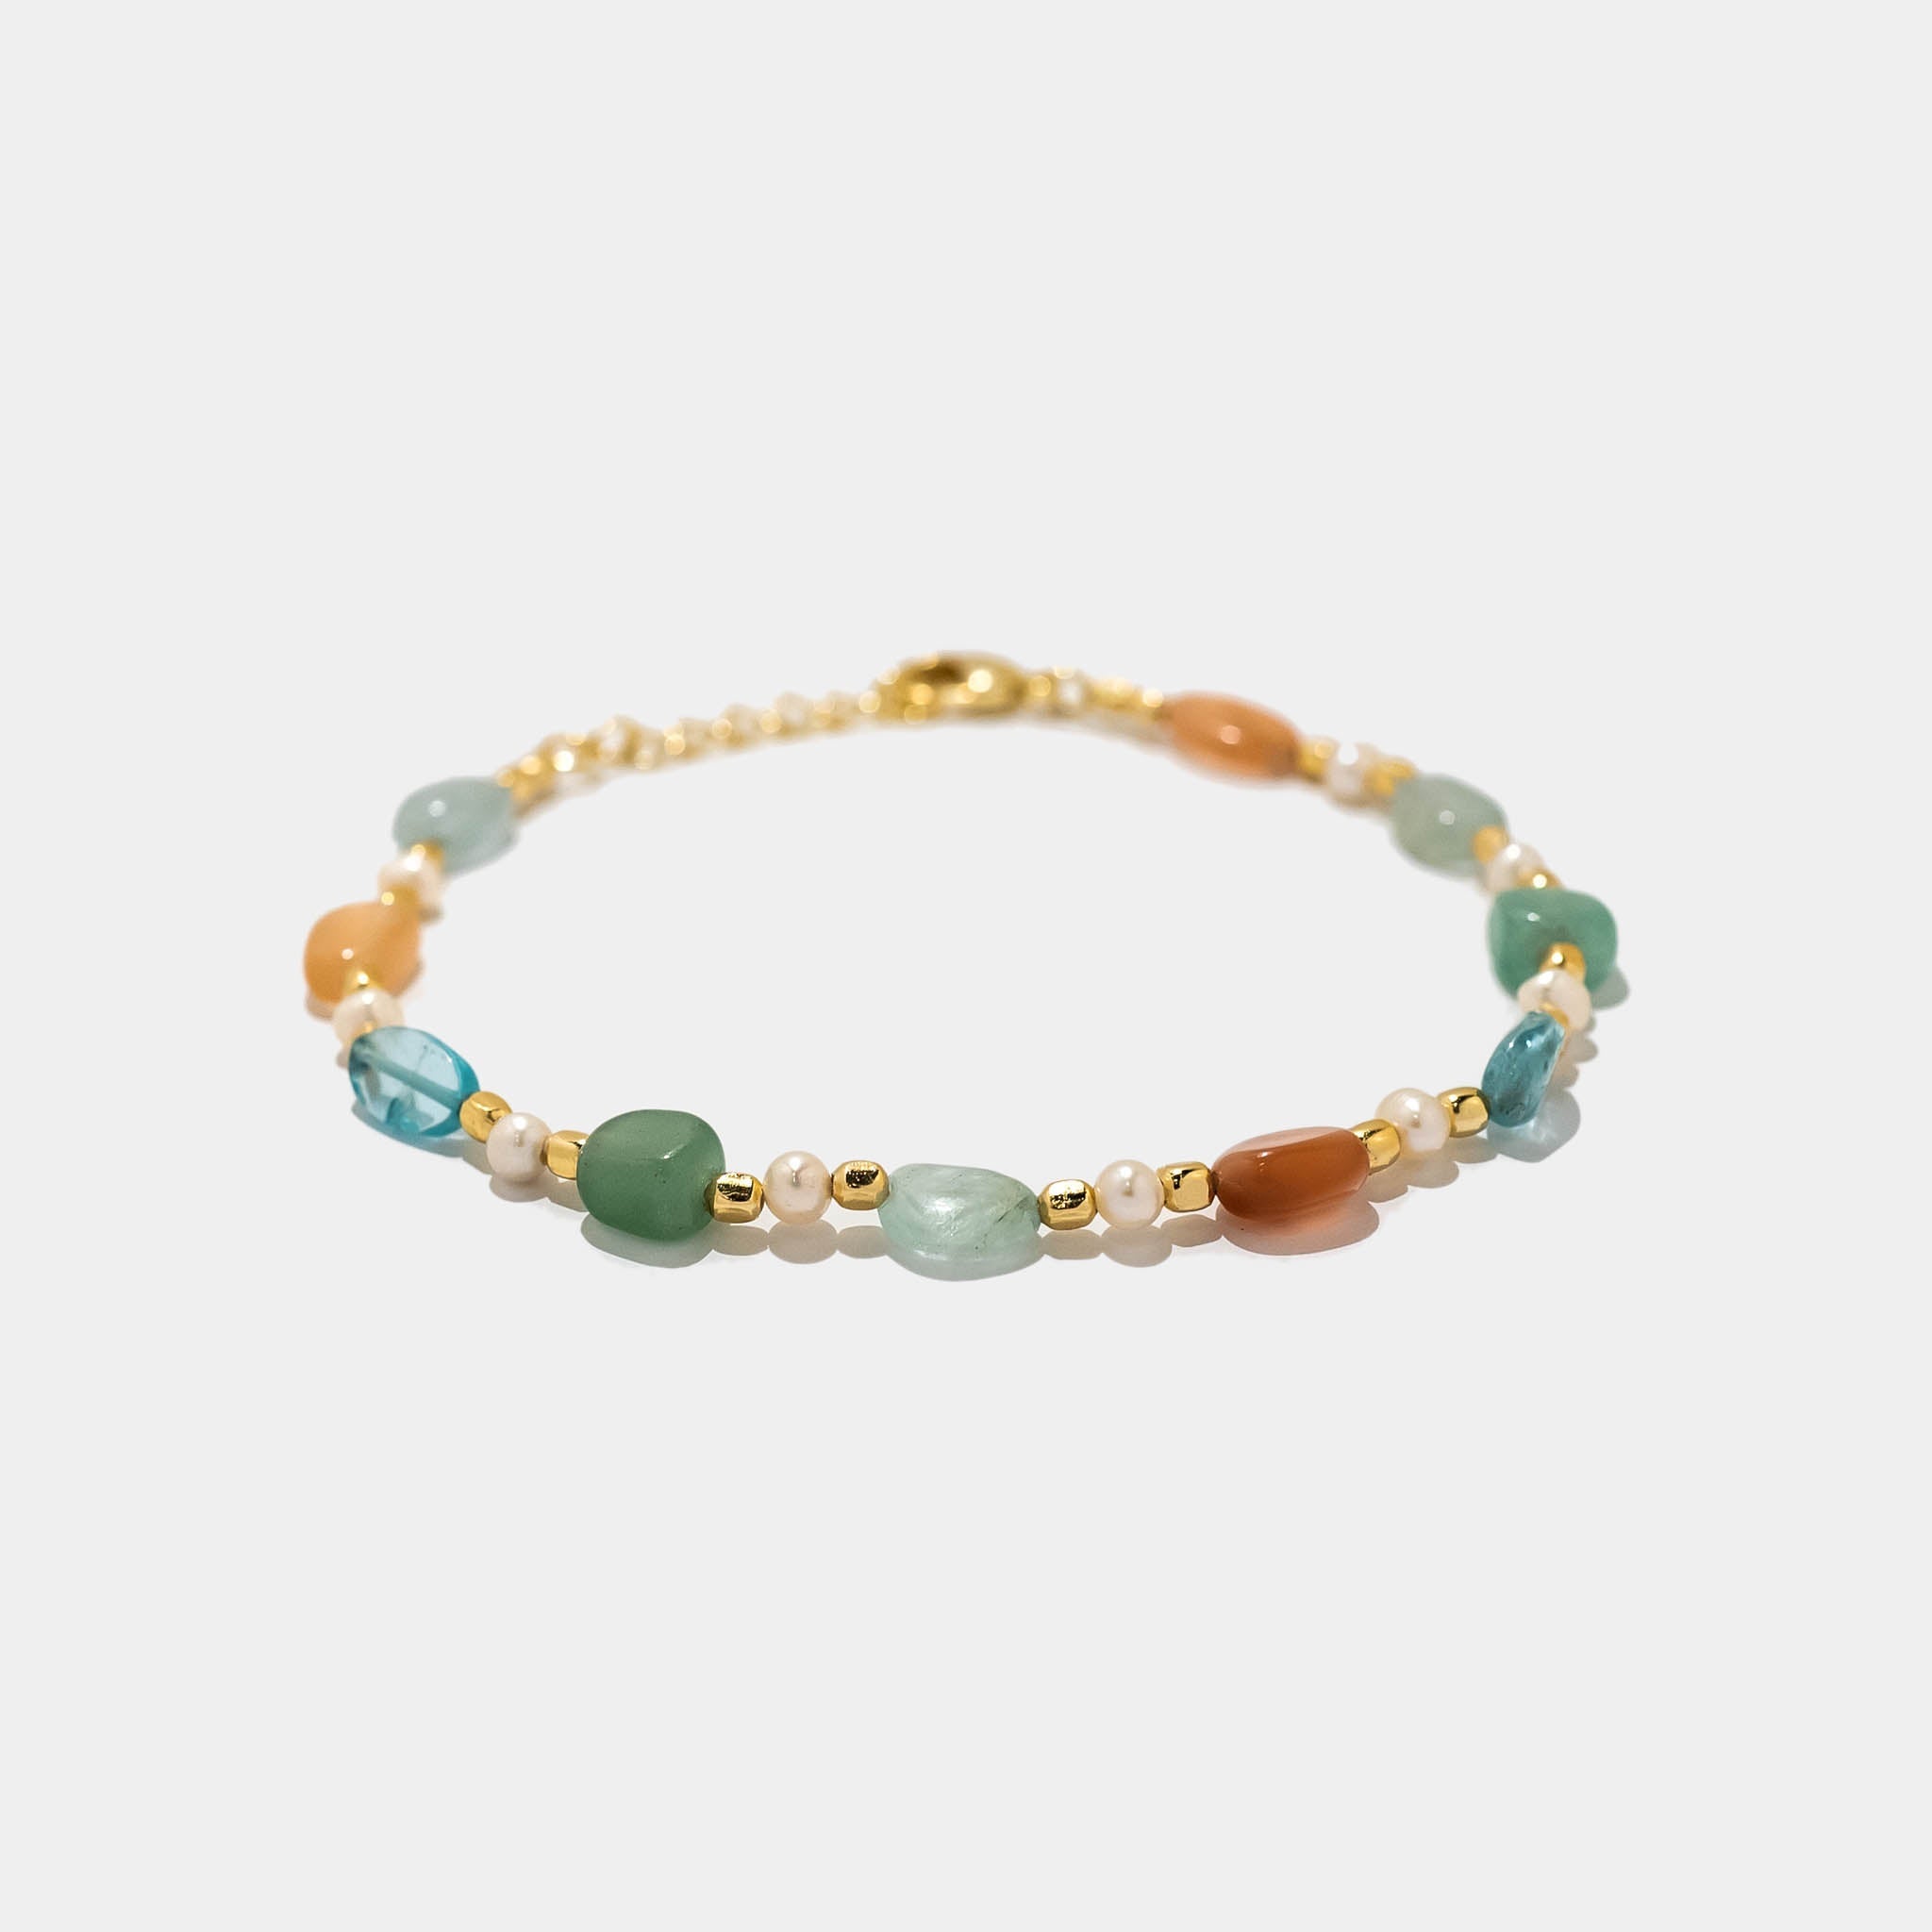 Armband Estelle Aquamarin und Peach Moonstone - Fleurs des Prés Jewelry